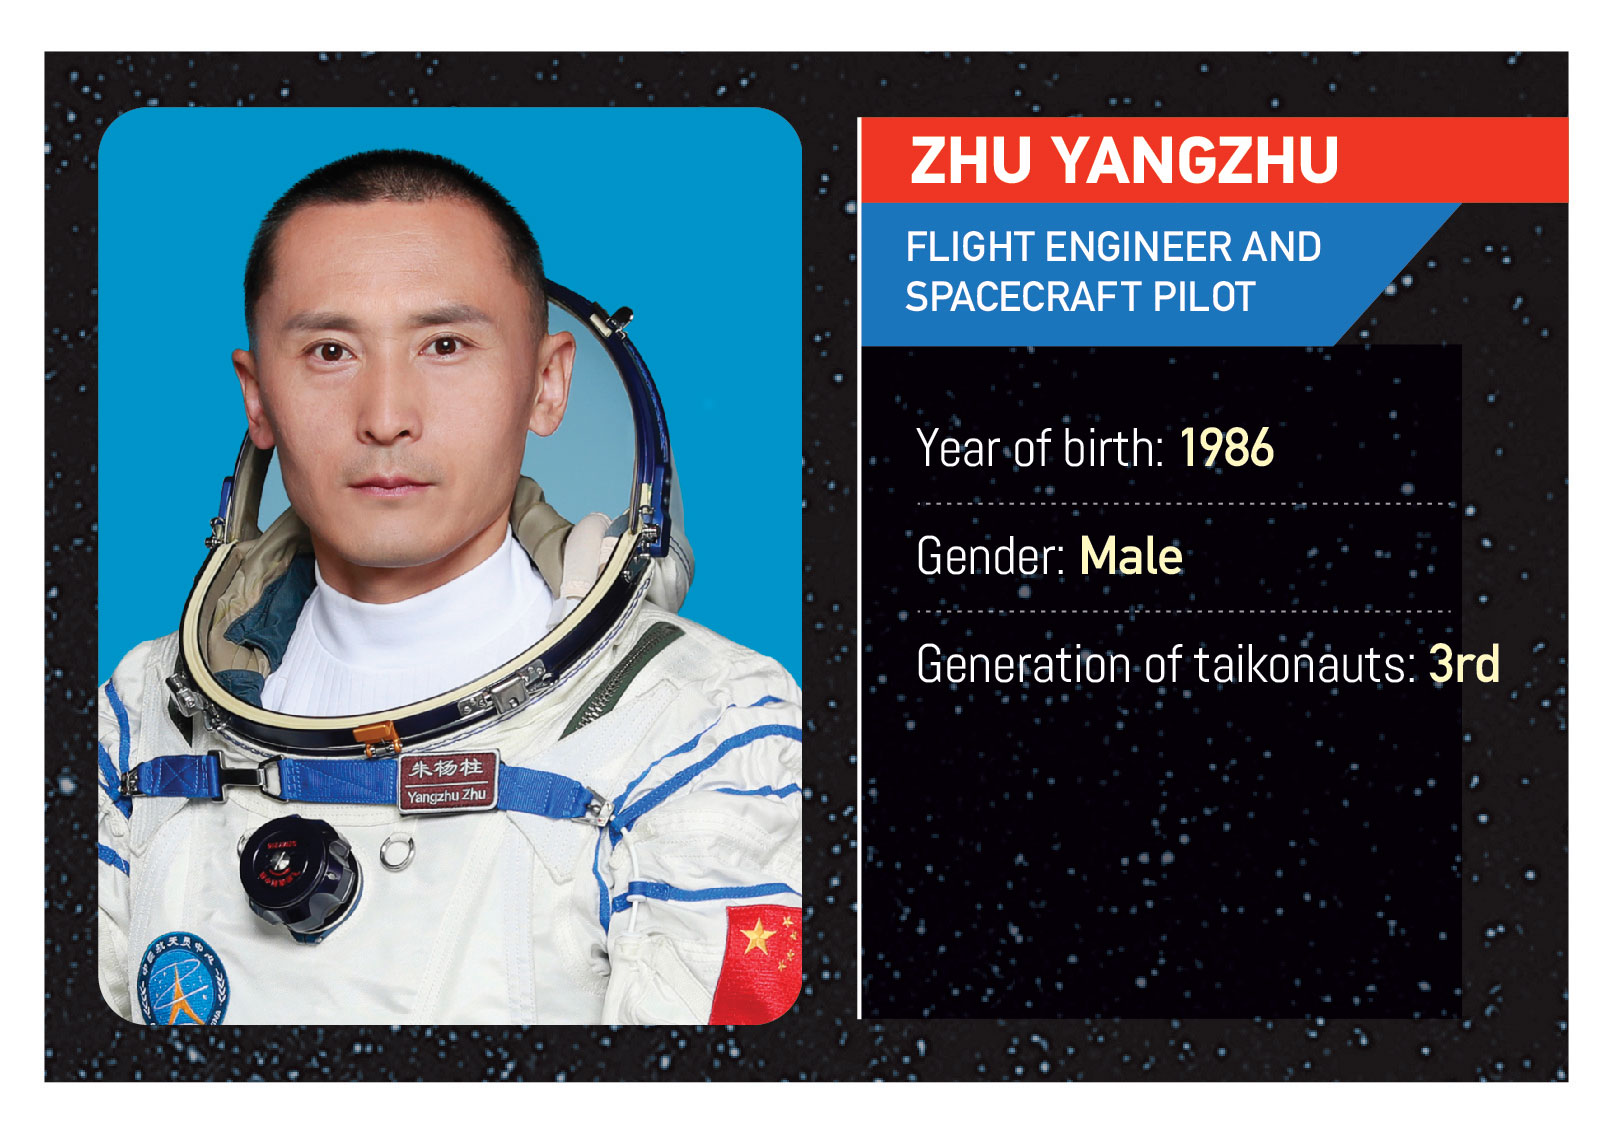 Meet the Shenzhou-16 manned mission crew: Jing Haipeng, Zhu Yangzhu and Gui Haichao